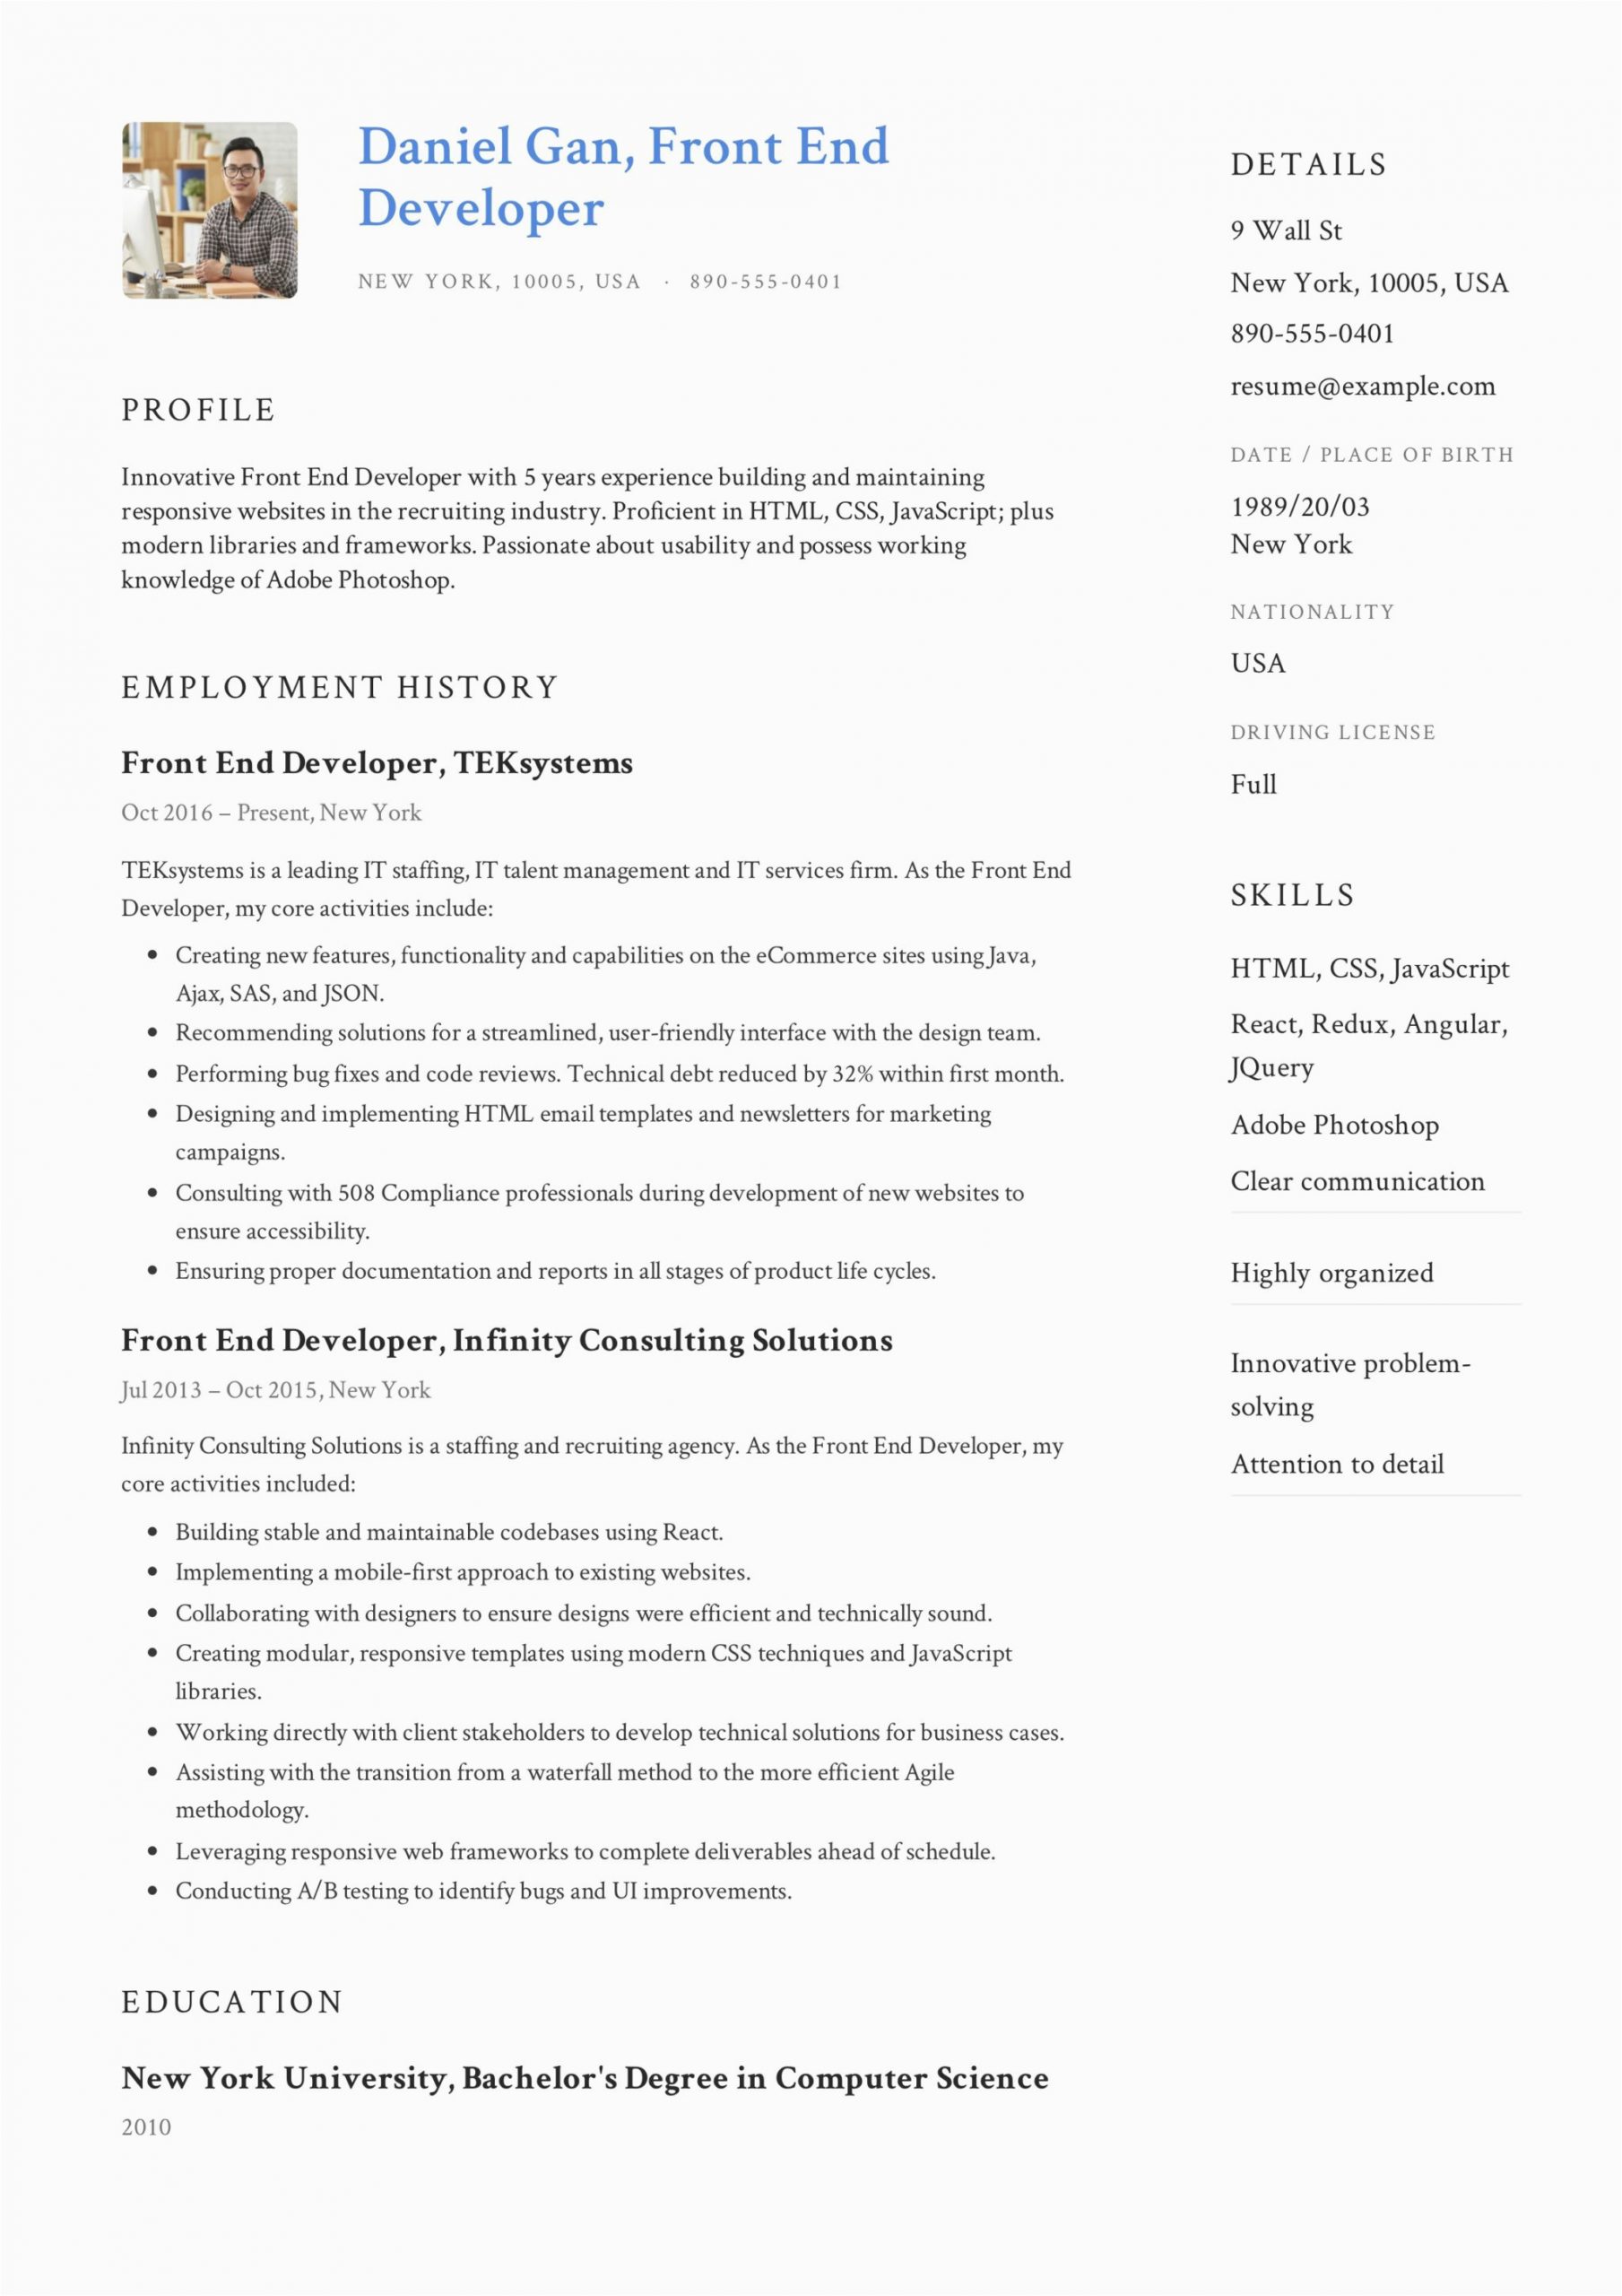 Sample Resume for Front End Developer Front End Developer Resume Guide & Sample – Resumeviking